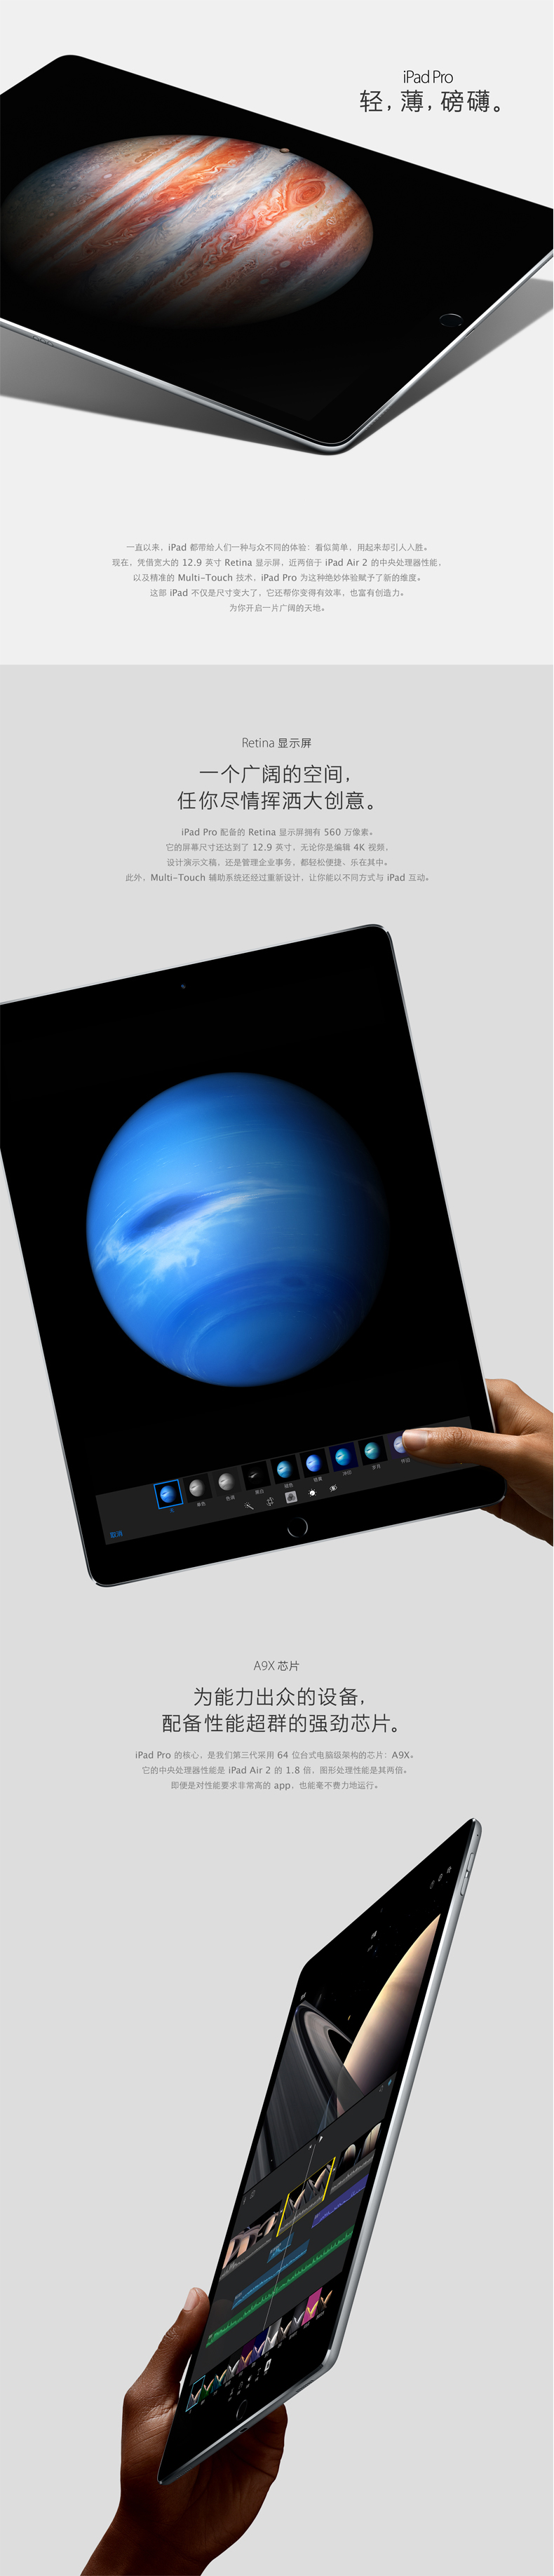 iPad-Pro_PC端详情页1.jpg